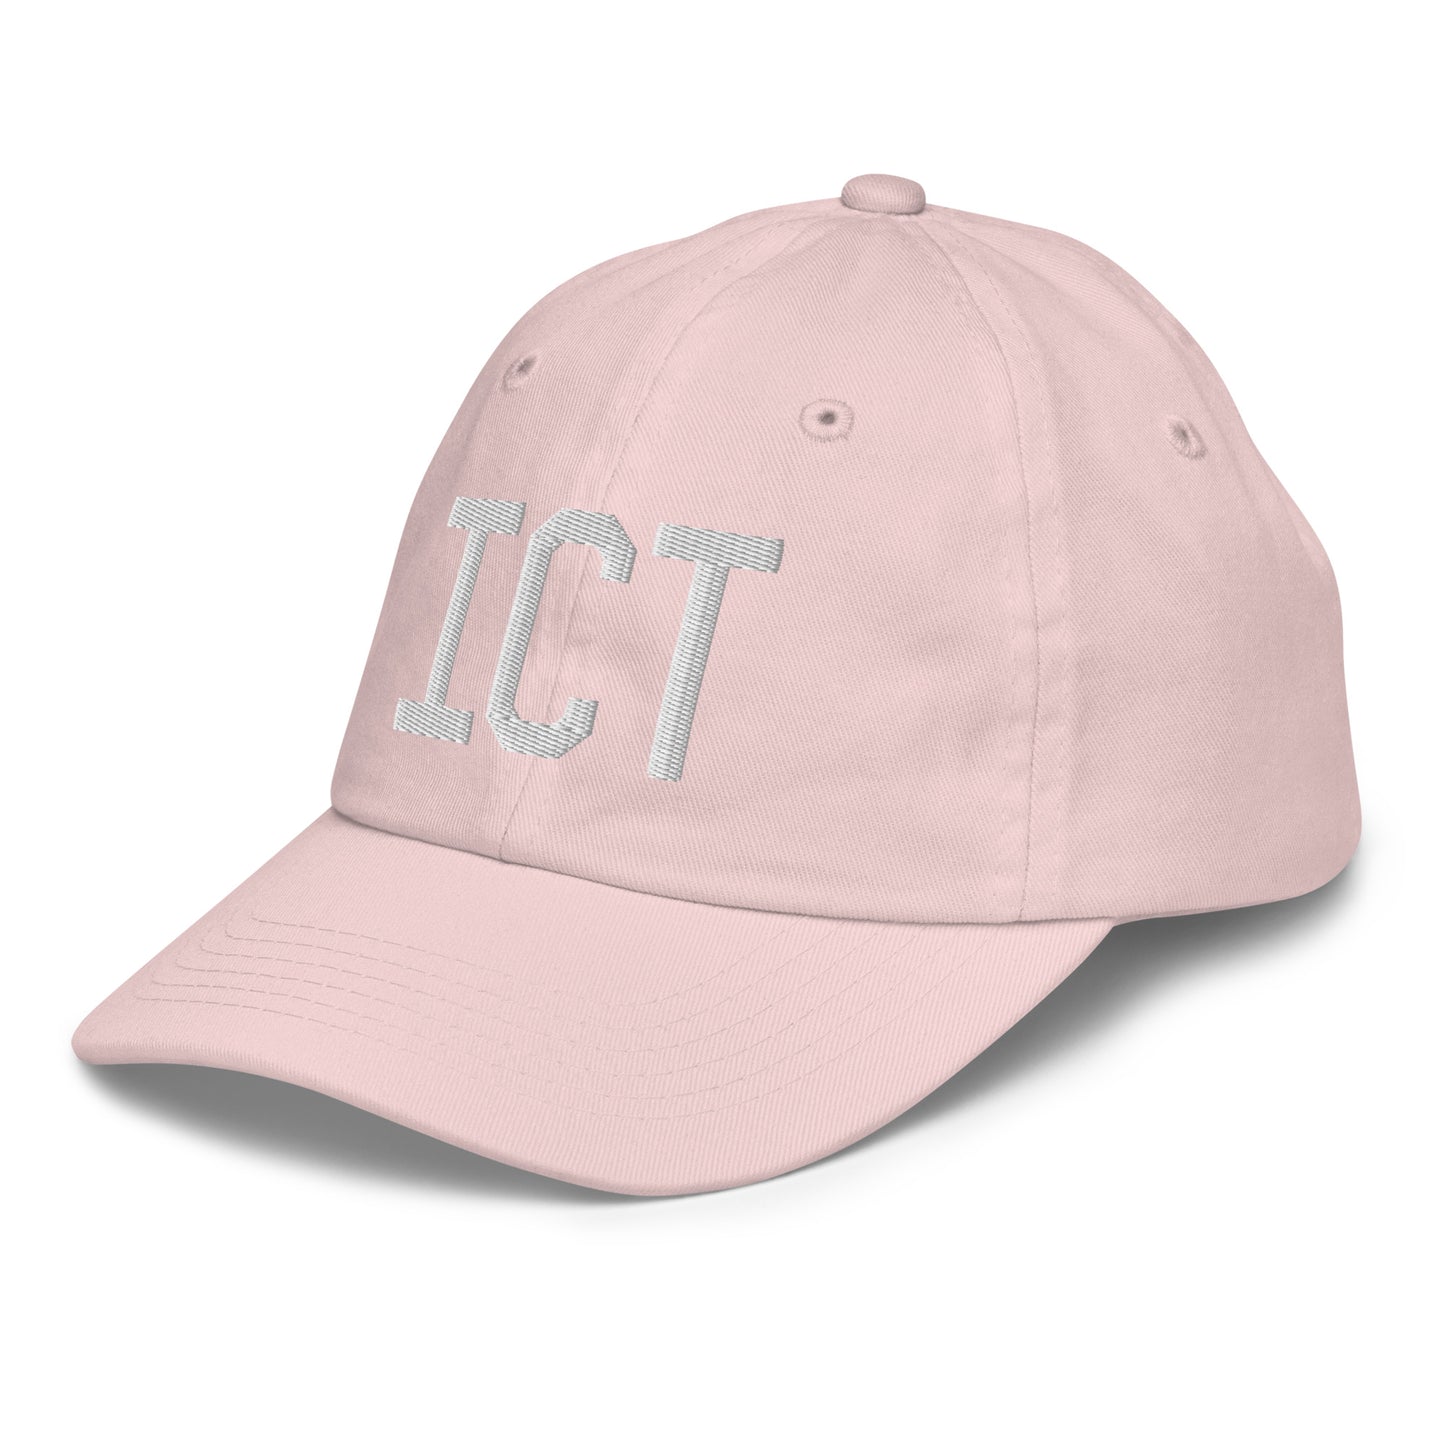 Airport Code Kid's Baseball Cap - White • ICT Wichita • YHM Designs - Image 33